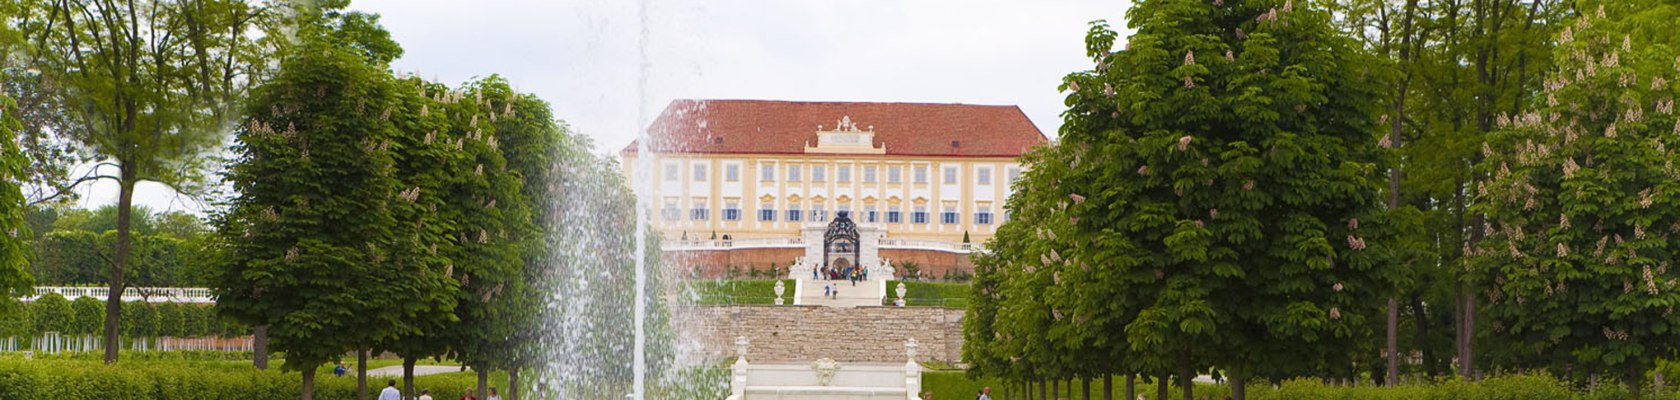 Schloss Hof, © Astrid Knie